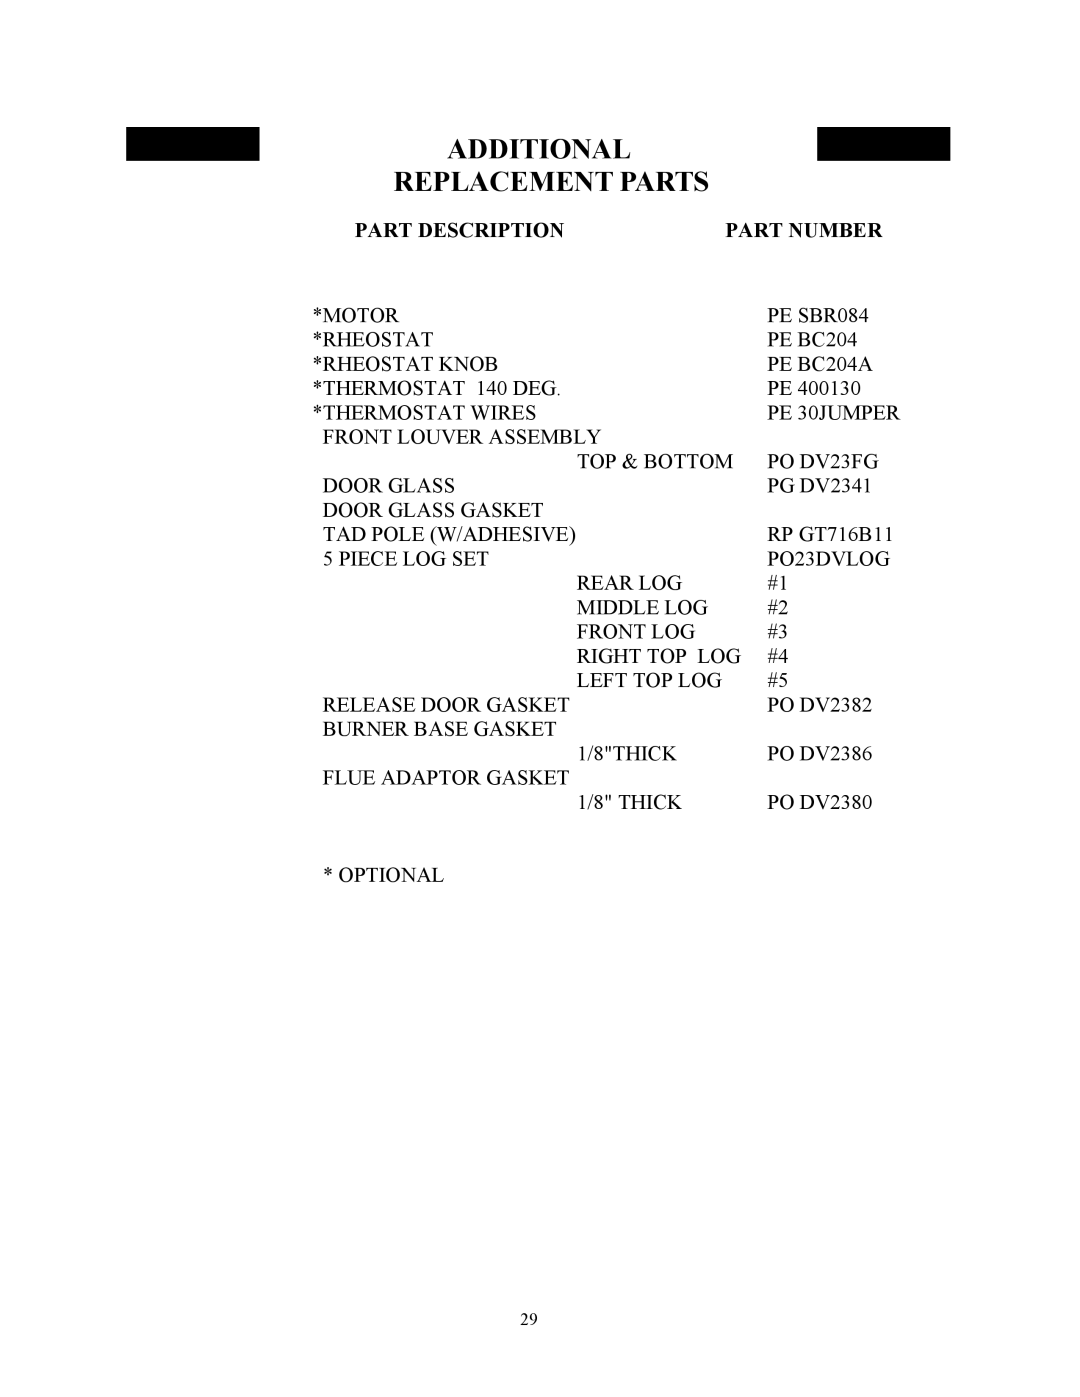 New Buck Corporation DV23ZC manual Additional Replacement Parts, Part Description, Part Number 